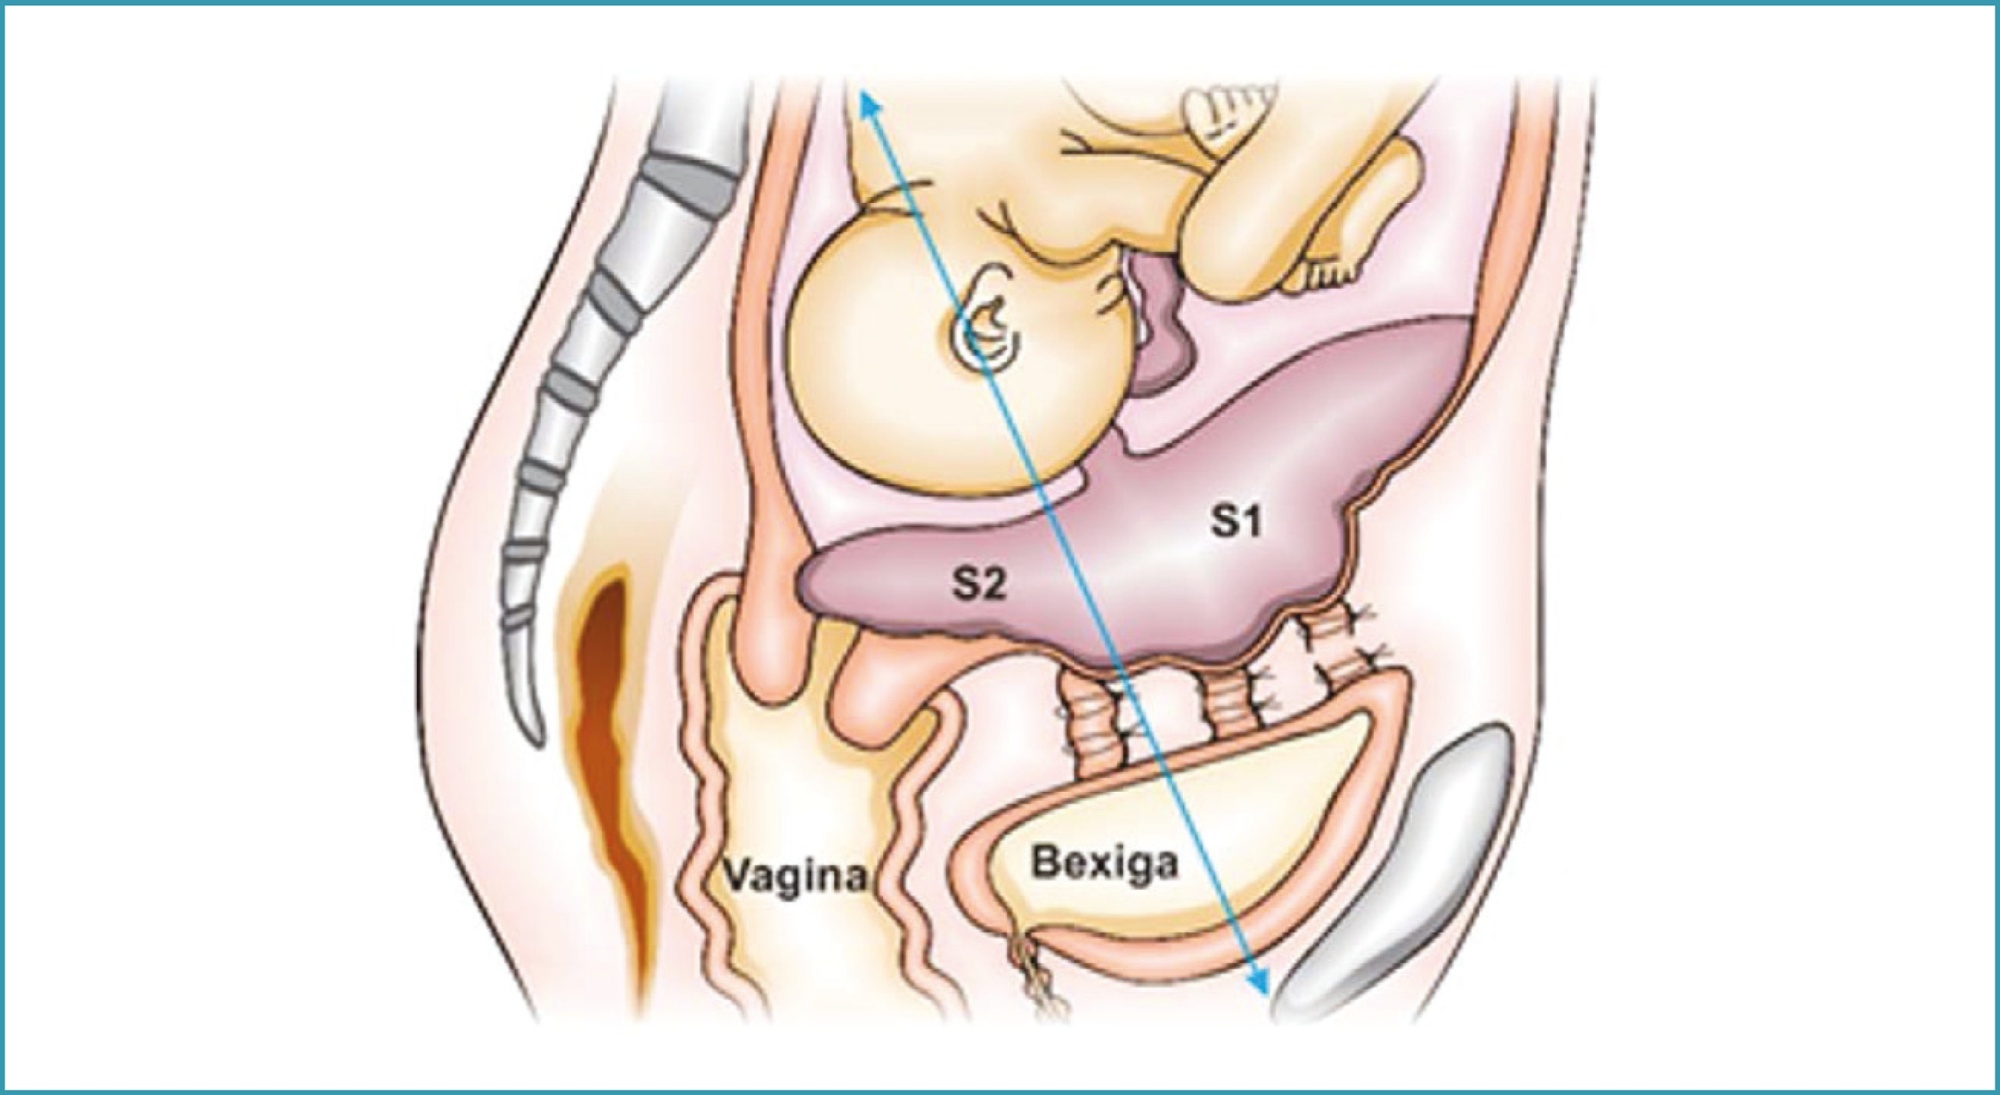 Surgical management of postpartum hemorrhage Number 4 – October 2020